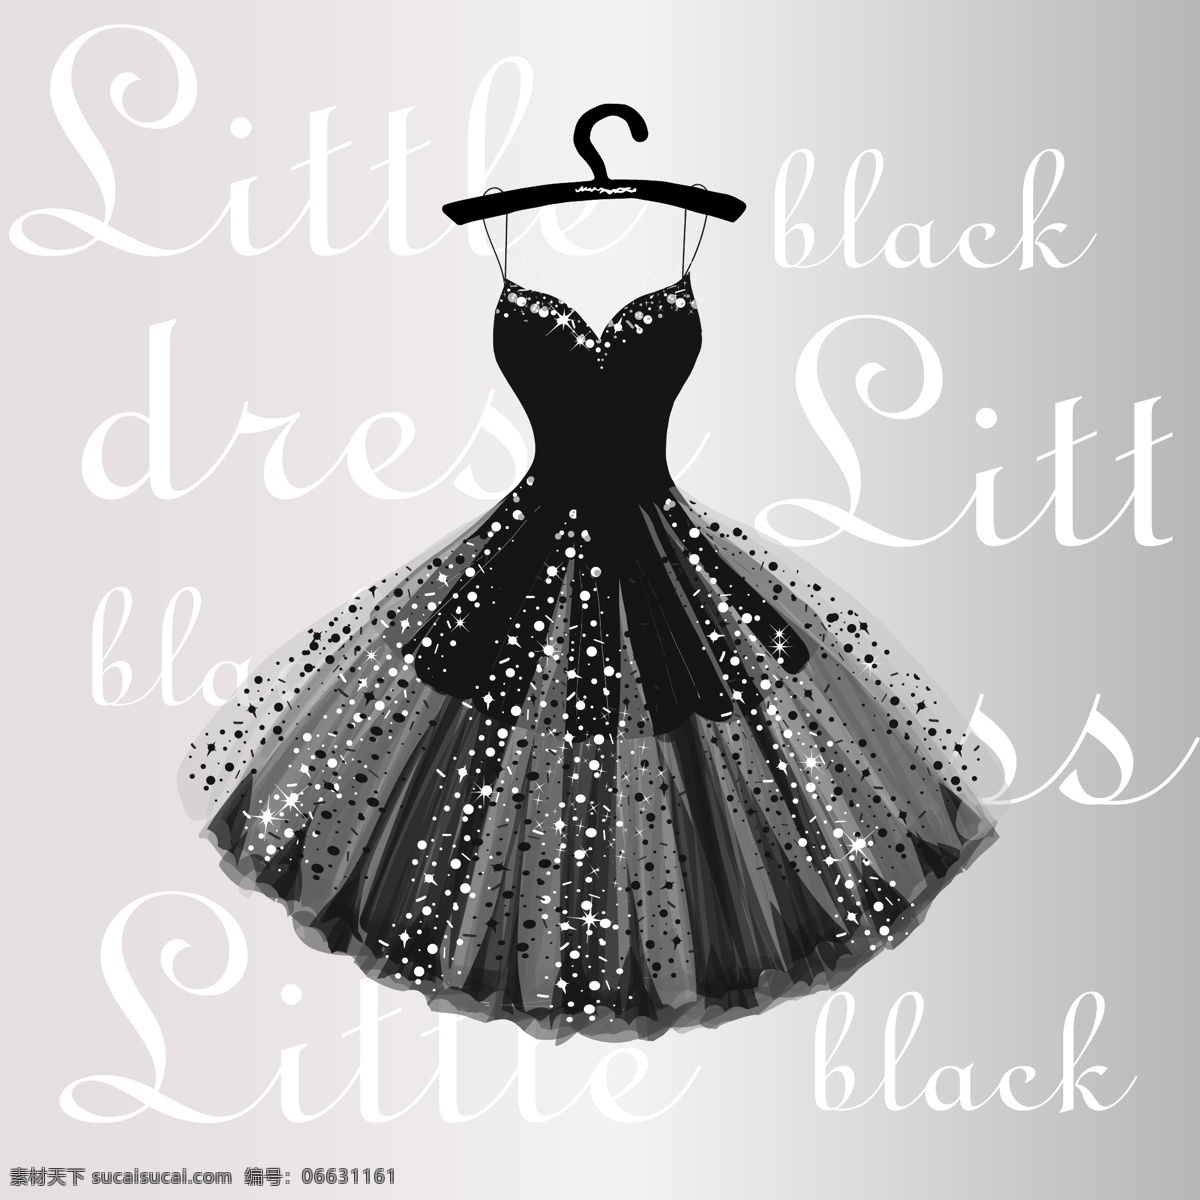 黑色 晚礼服 裙子 服装 服饰 时装 女装 裙装 长裙 蝴蝶 衣架 文化艺术 绘画书法